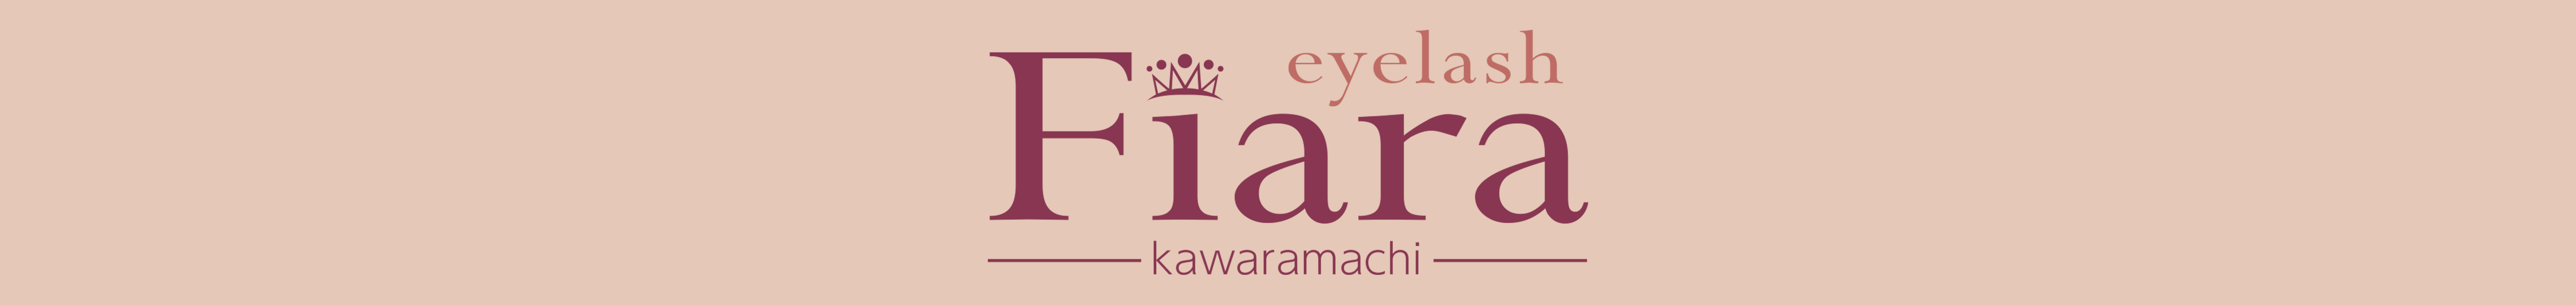 eyelash Fiara kawaramachi logo